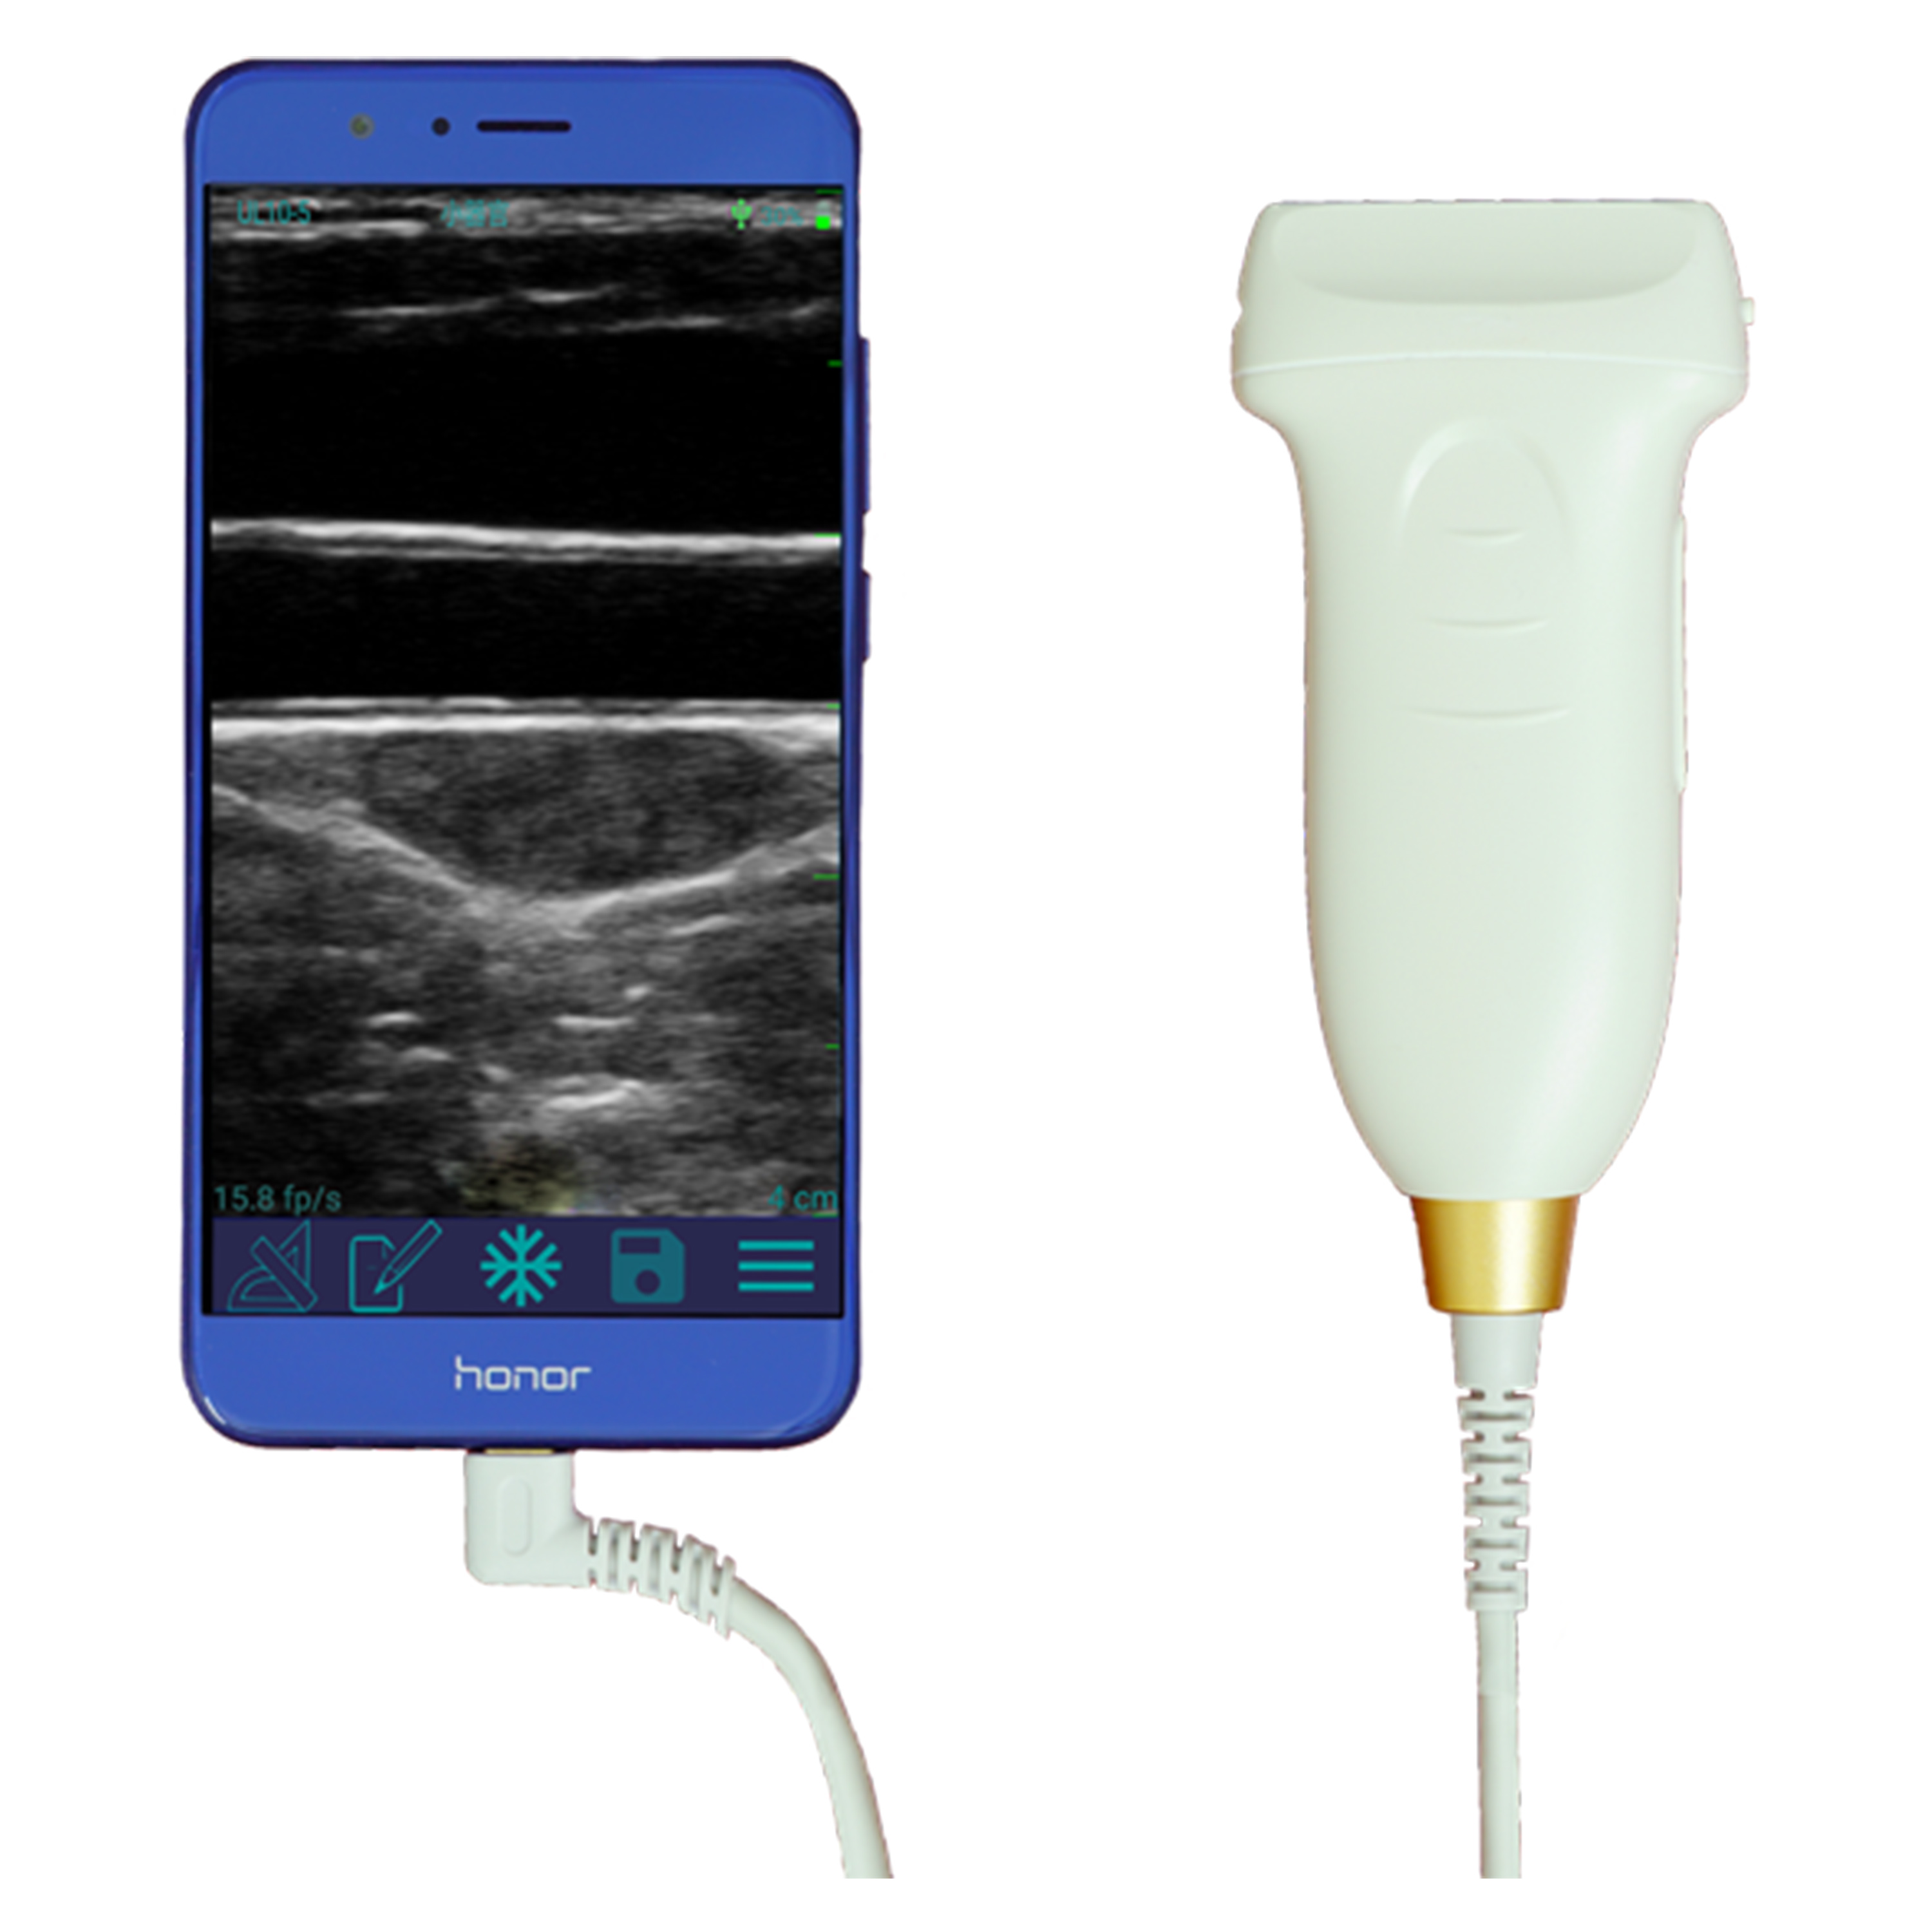 Amain MagiQ 128 Elements Handheld Diagnostic ultrasound system Instrument Buy USB ultrasound scanner